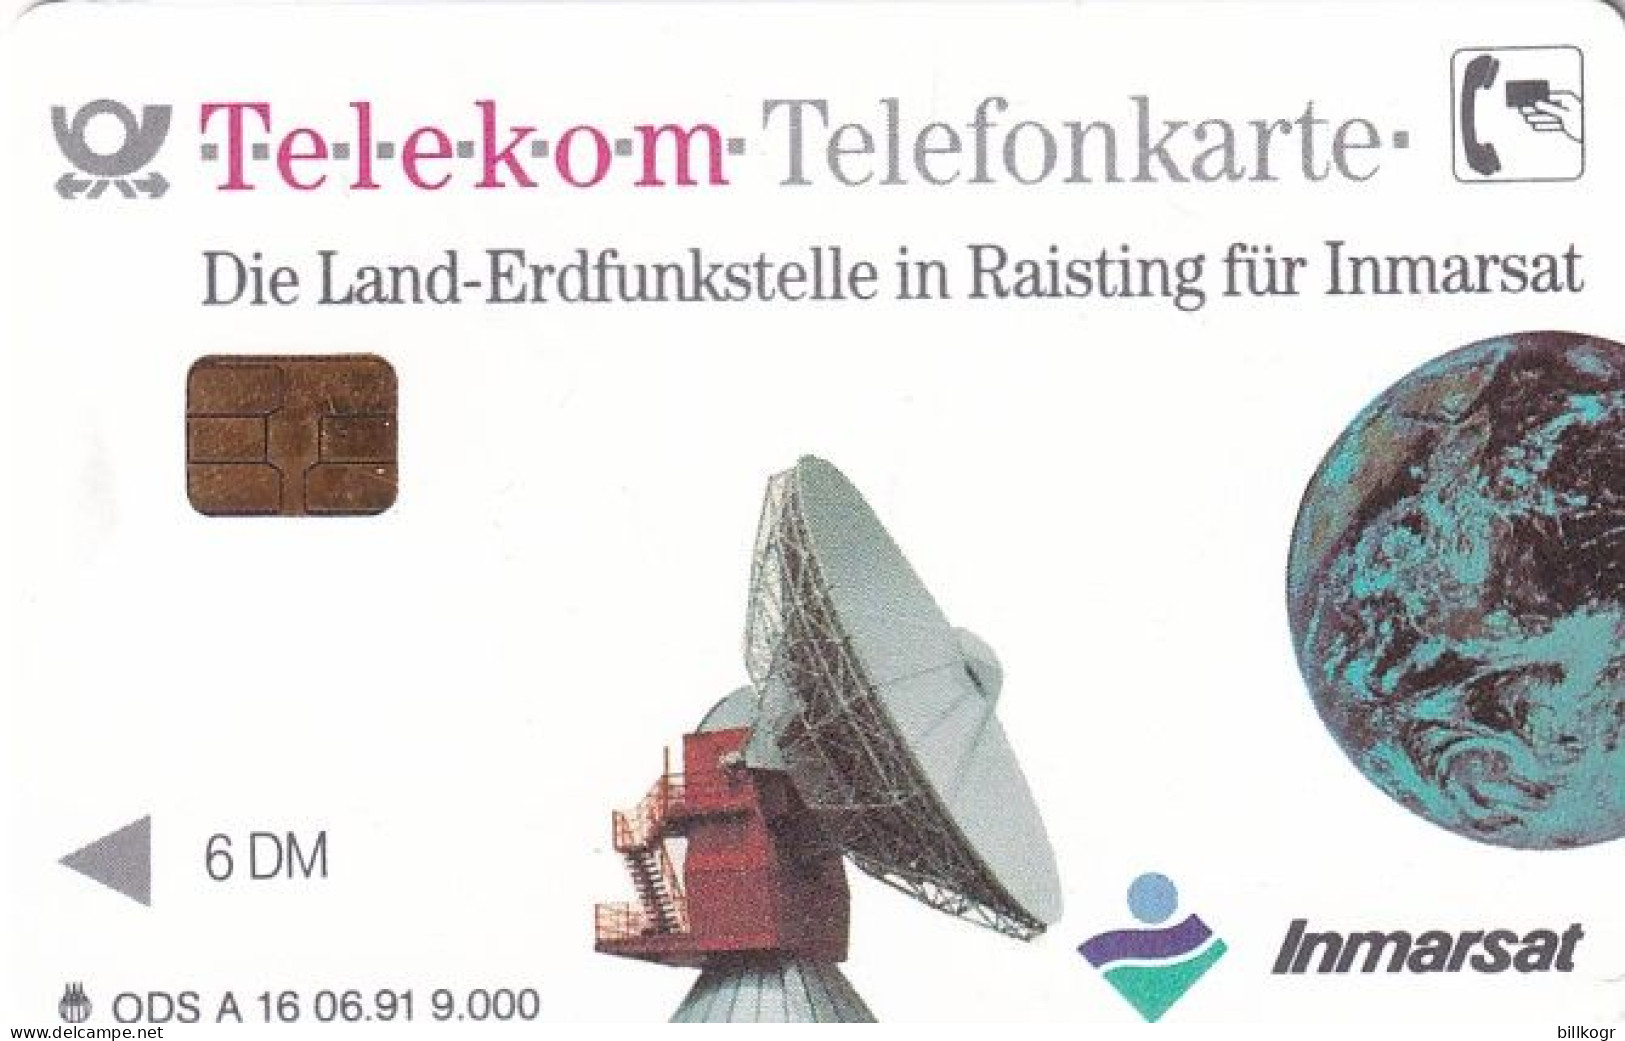 GERMANY - Die Land-Erdfunkstelle Für Inmarsat/Mobilfunk Mit System(A 16), Tirage 9000, 06/91, Mint - A + AD-Series : Werbekarten Der Dt. Telekom AG